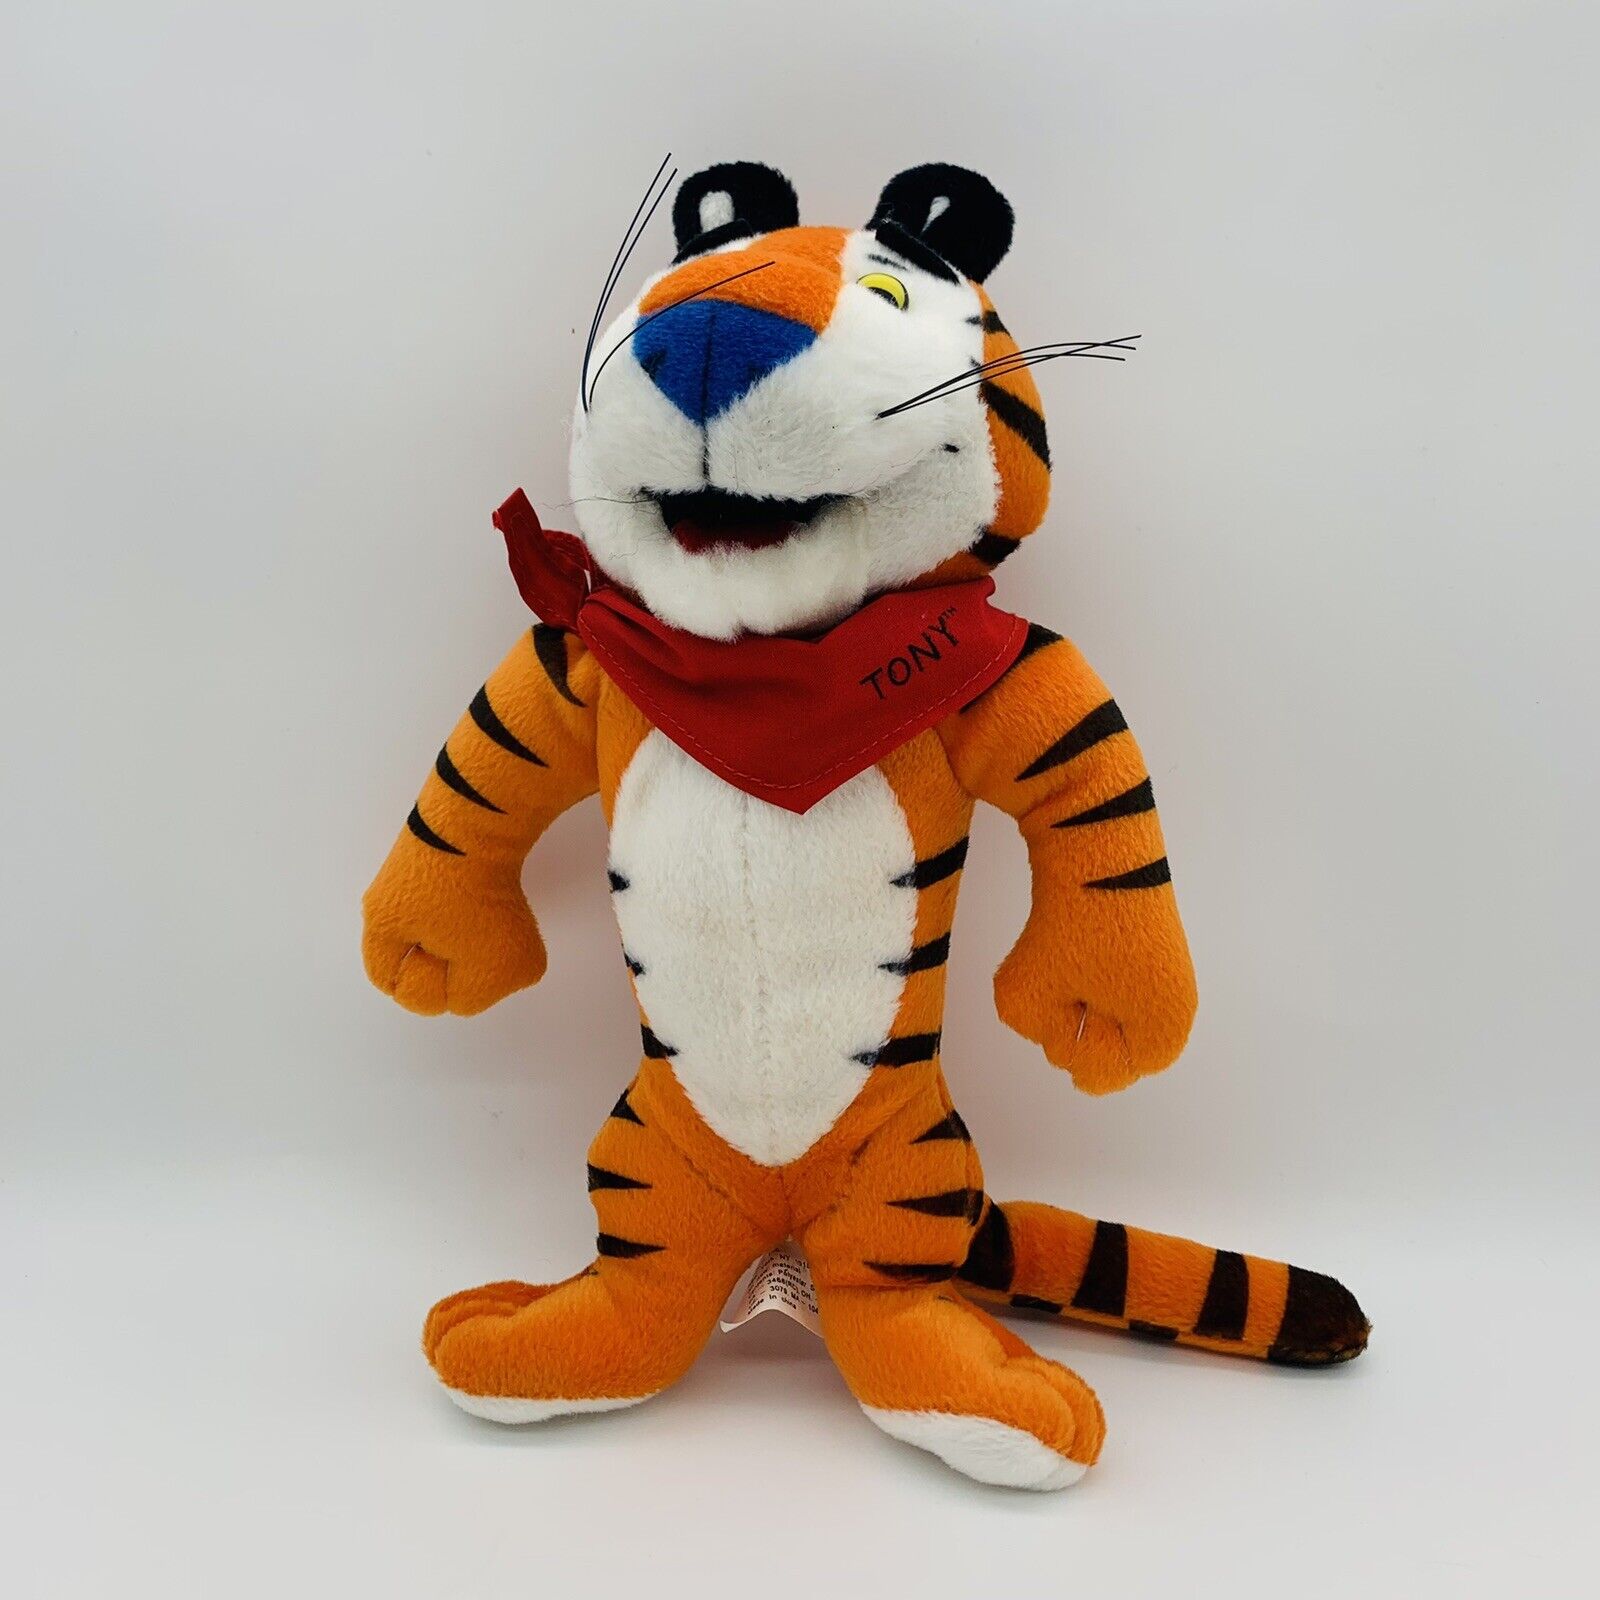 10” Kellogs Tony The Tiger Stuffed Animal Plush